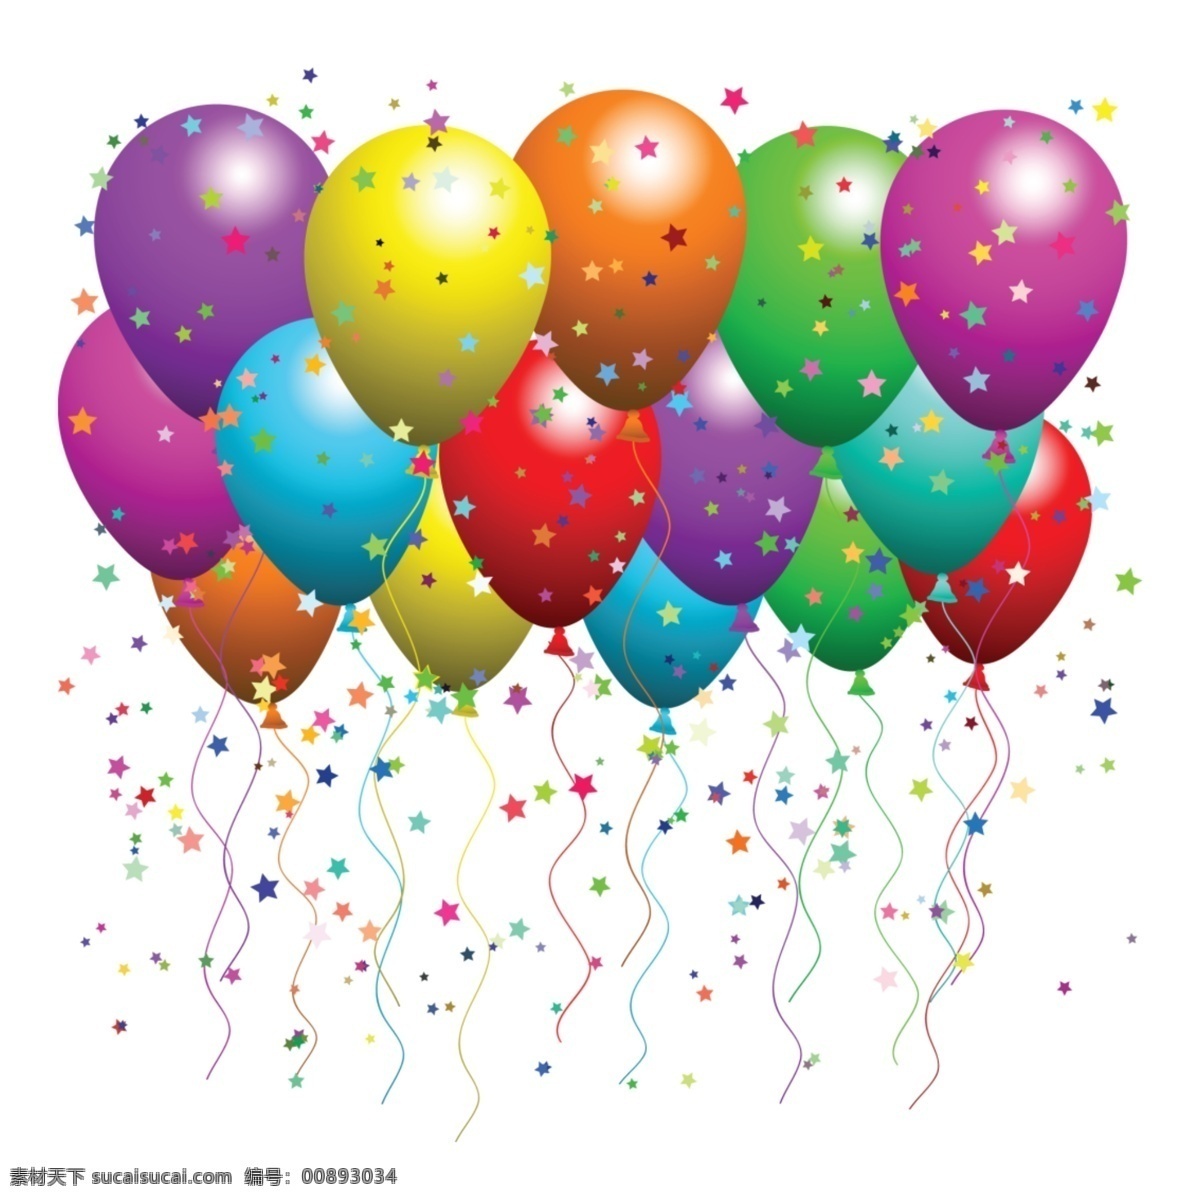 气球图片 气球 矢量气球 卡通气球 彩色气球 手绘气球 气球插画 气球背景 喜庆元素 喜庆素材 节日元素 节日素材 生日元素 生日素材 生日气球